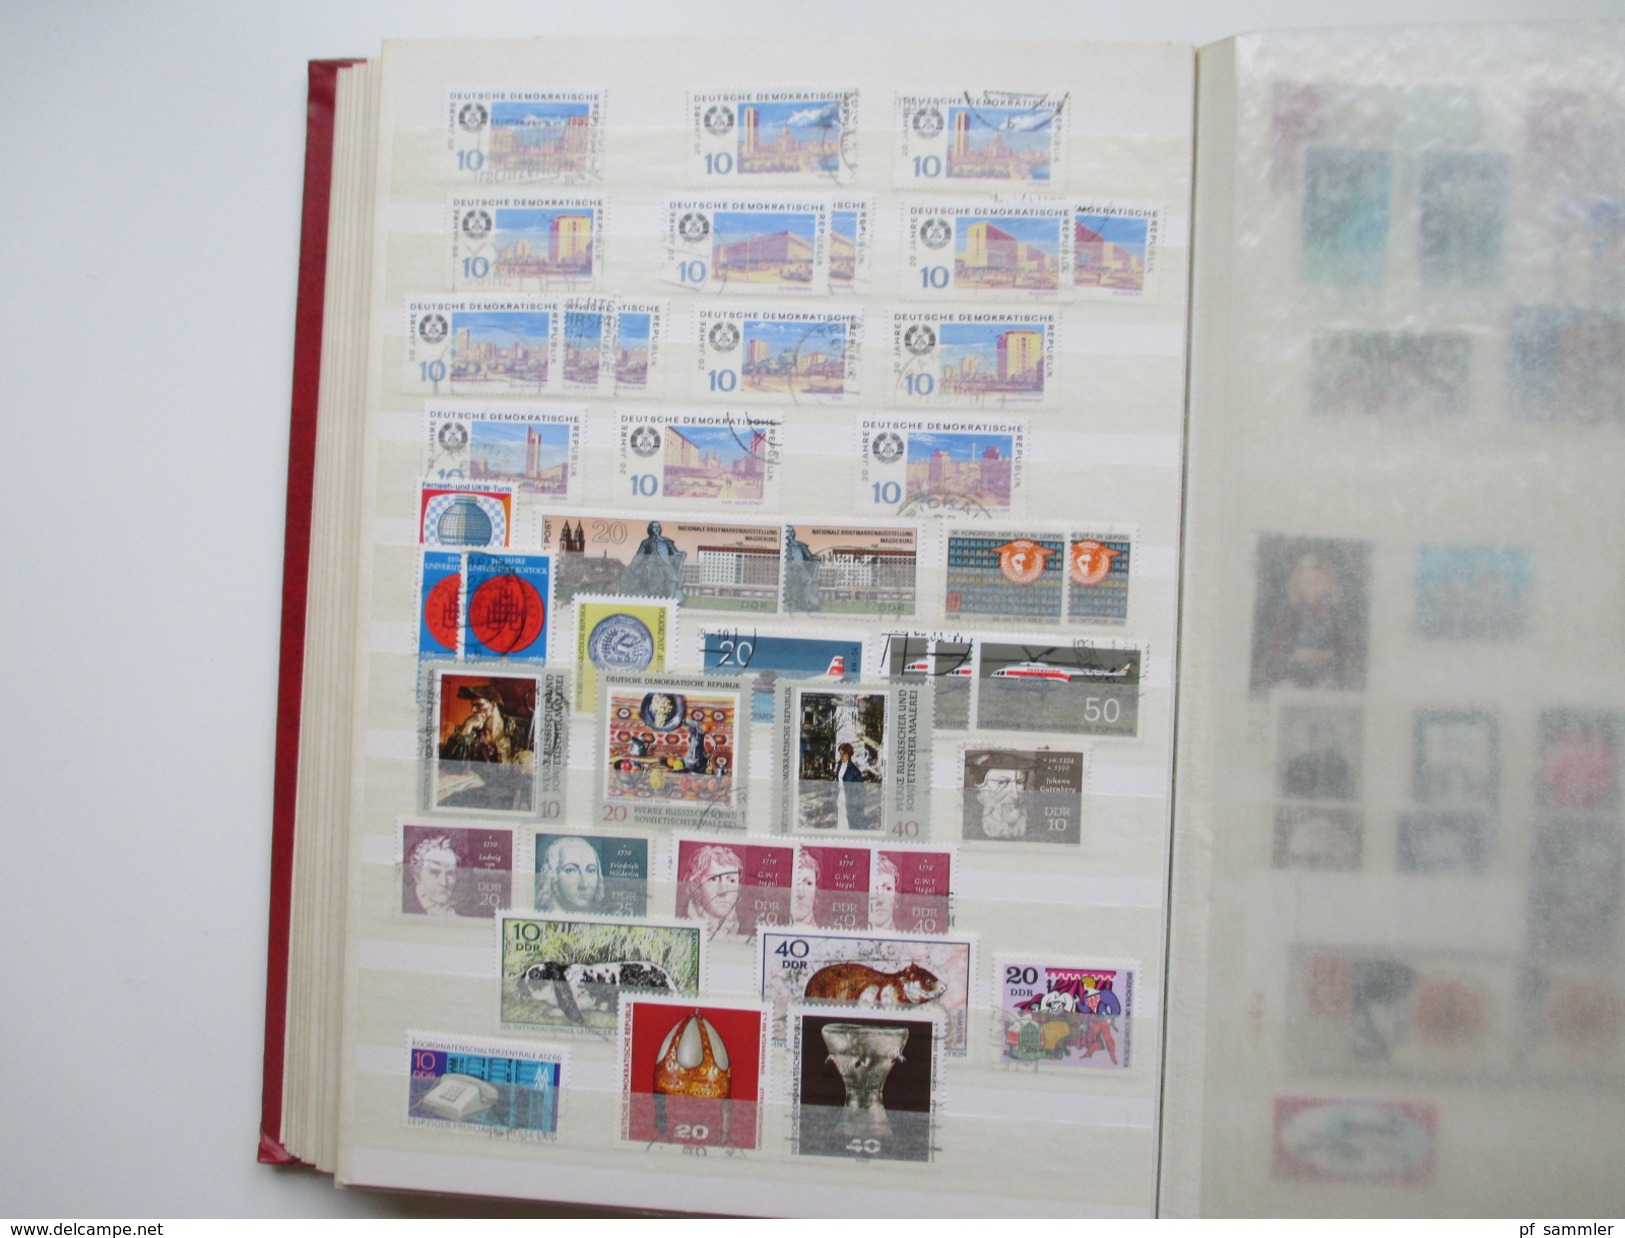 DDR Sammlung 1949 - 88 gestempelt mit vielen Marken und Sätze! Etliche Tagesstempel! Hoher Katalogwert!